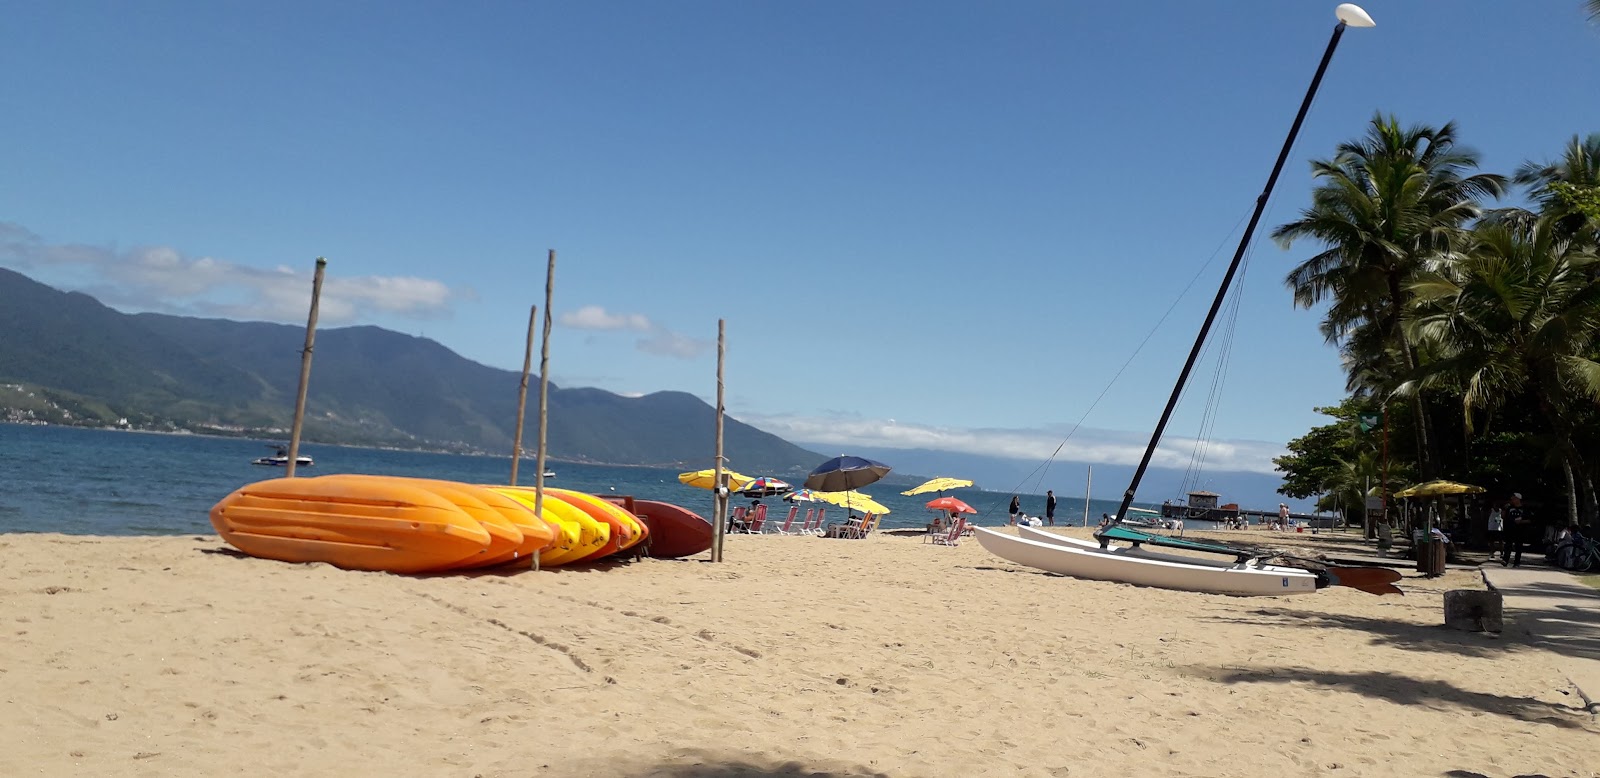 Foto af Praia Do Pereque - populært sted blandt afslapningskendere